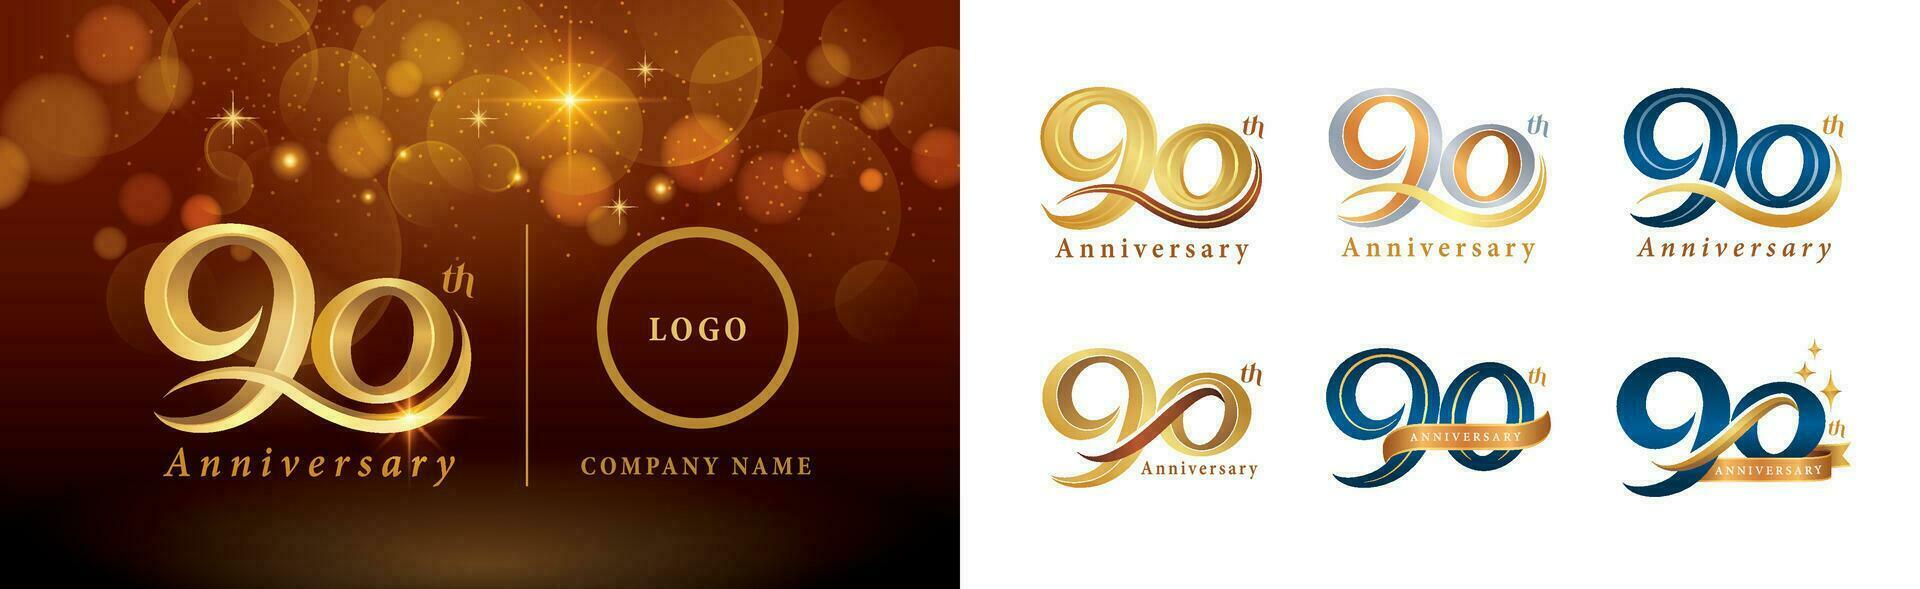 impostato di 90 ° anniversario logotipo disegno, novanta anni festeggiare anniversario logo vettore